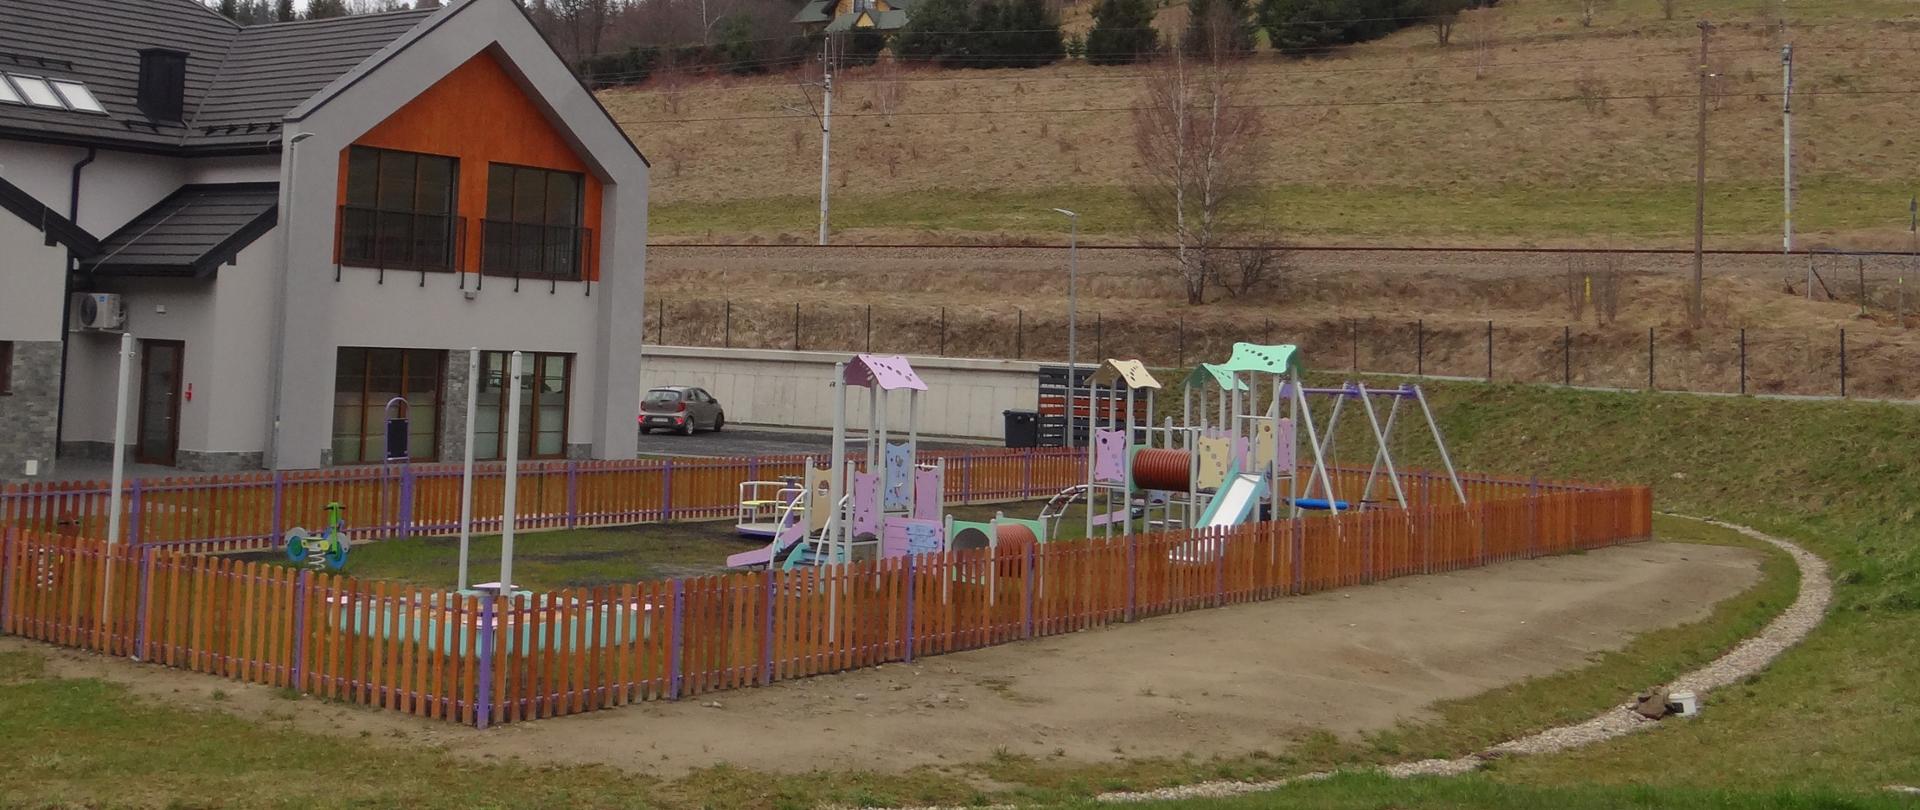 Budowa placu zabaw dla przedszkola przy budynku wielofunkcyjnym w miejscowości Sieniawa. Dostawa i montaż urządzeń zabawowych wraz wykonaniem ogrodzenia. 